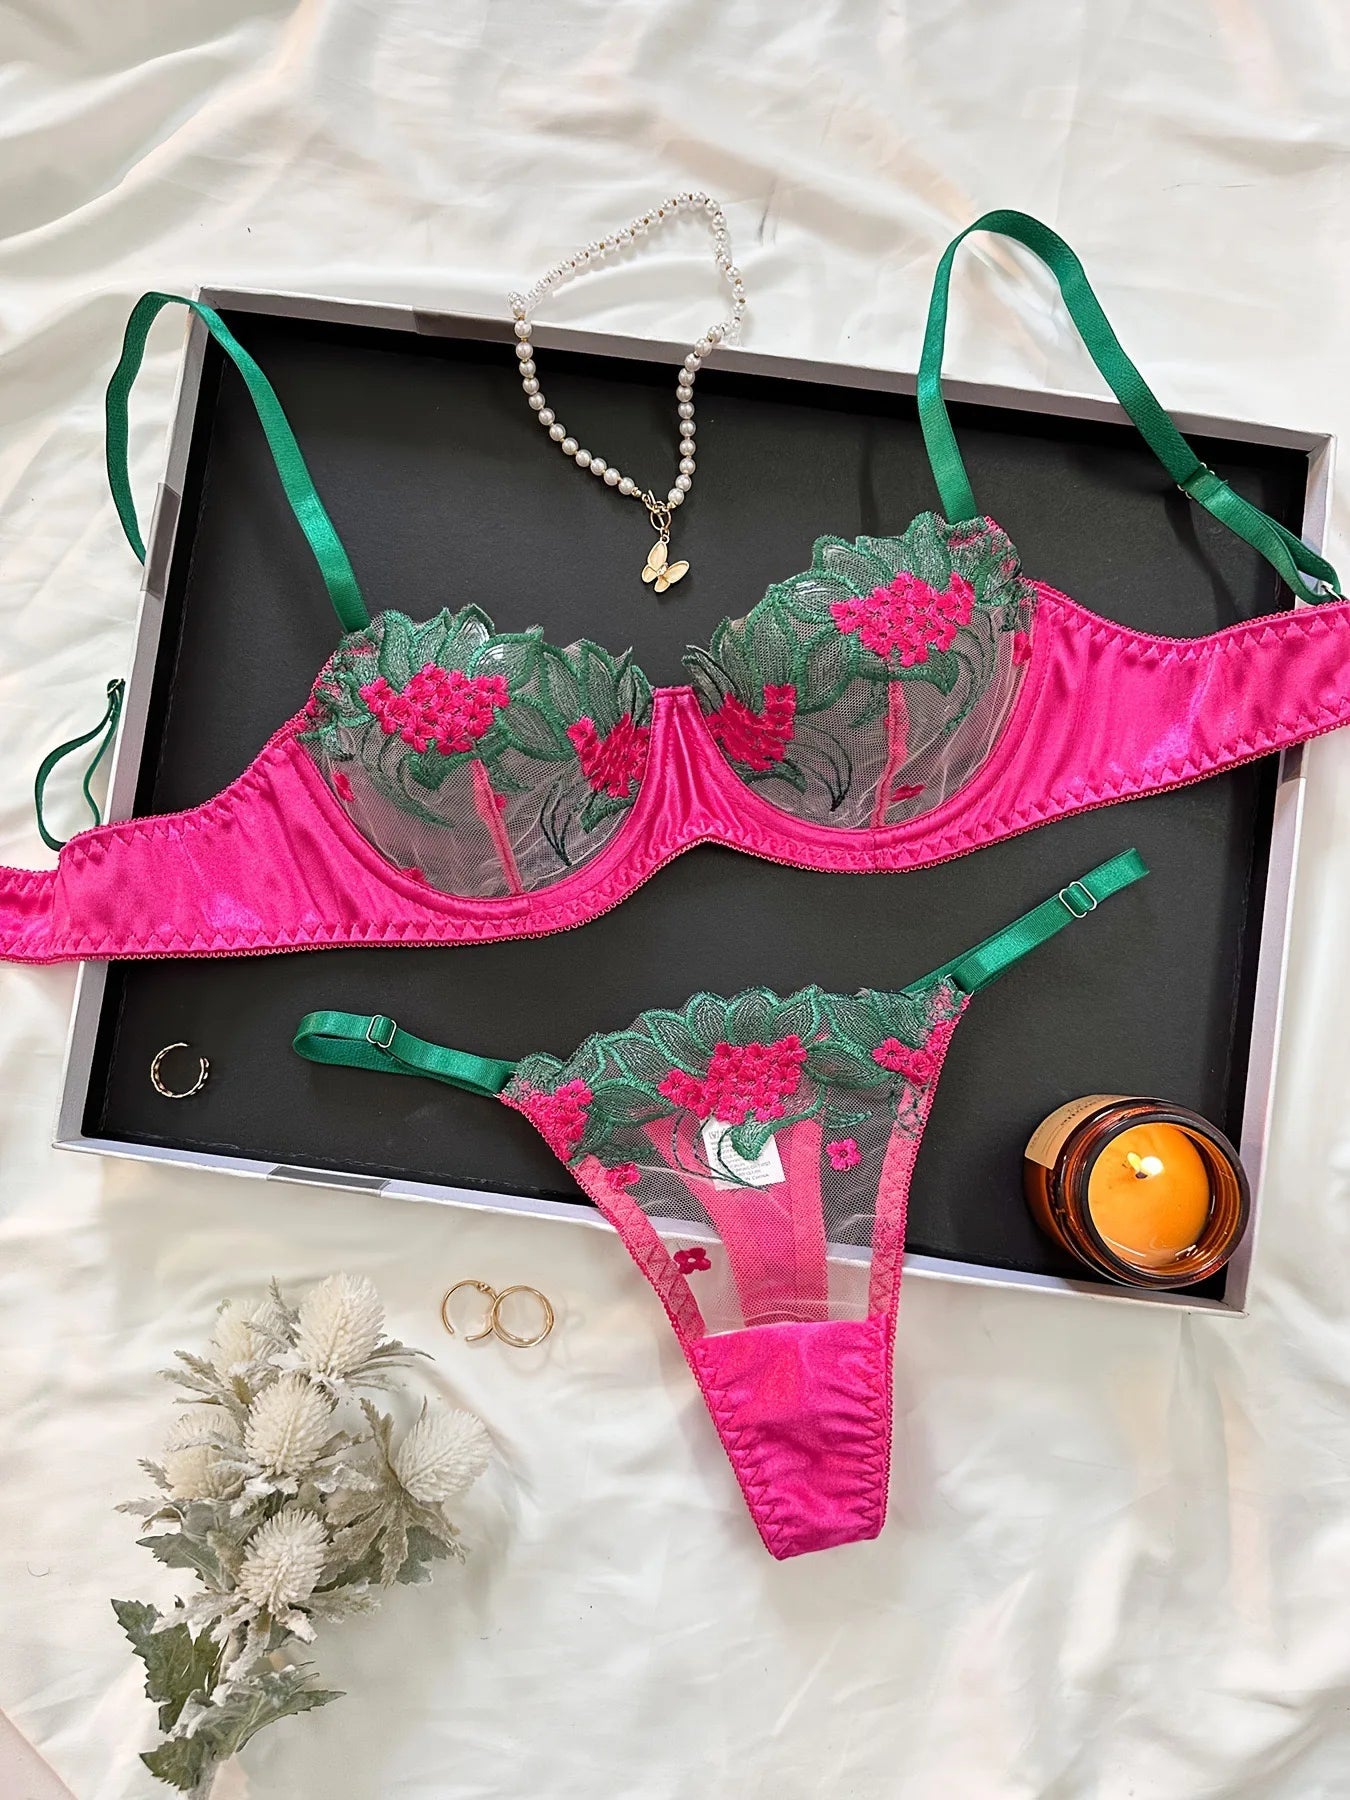 MIRABELLE Fancy Lingerie Floral Lace Bra Set 2 Piece Luxury Underwear